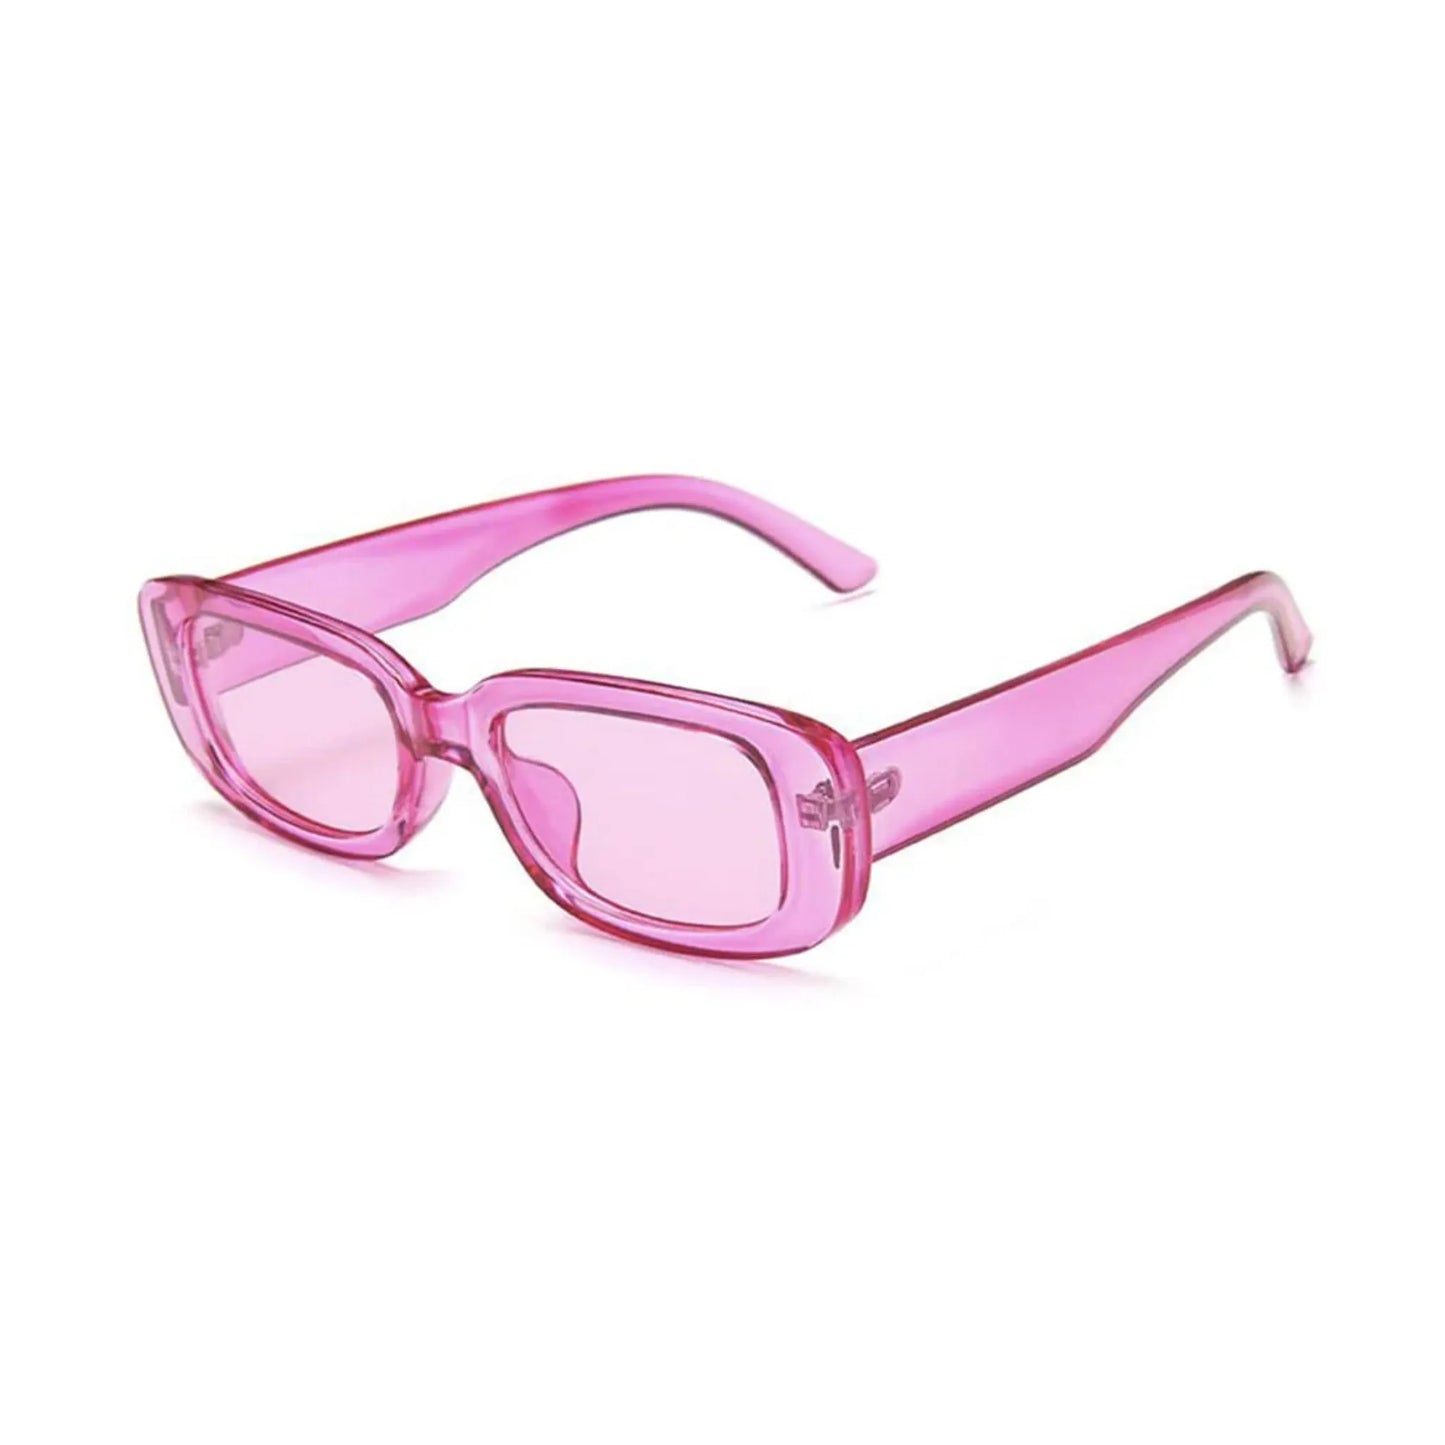 Οβάλ Γυαλιά ηλίου Kony της Exposure Sunglasses με προστασία UV400 σε ροζ χρώμα σκελετού και ροζ φακό. Πλάγια προβολή